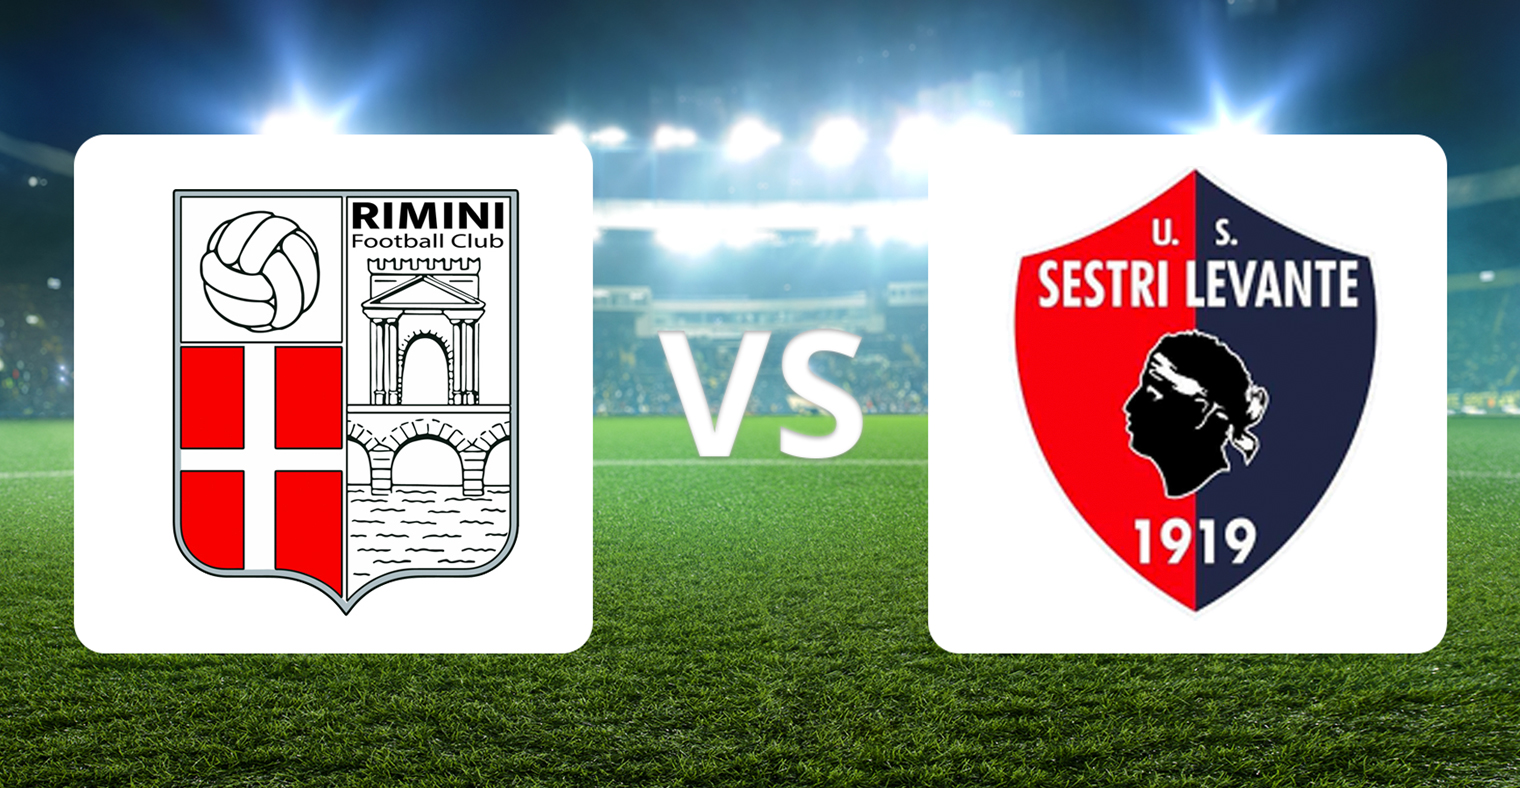 Rimini vs Sestri Levante